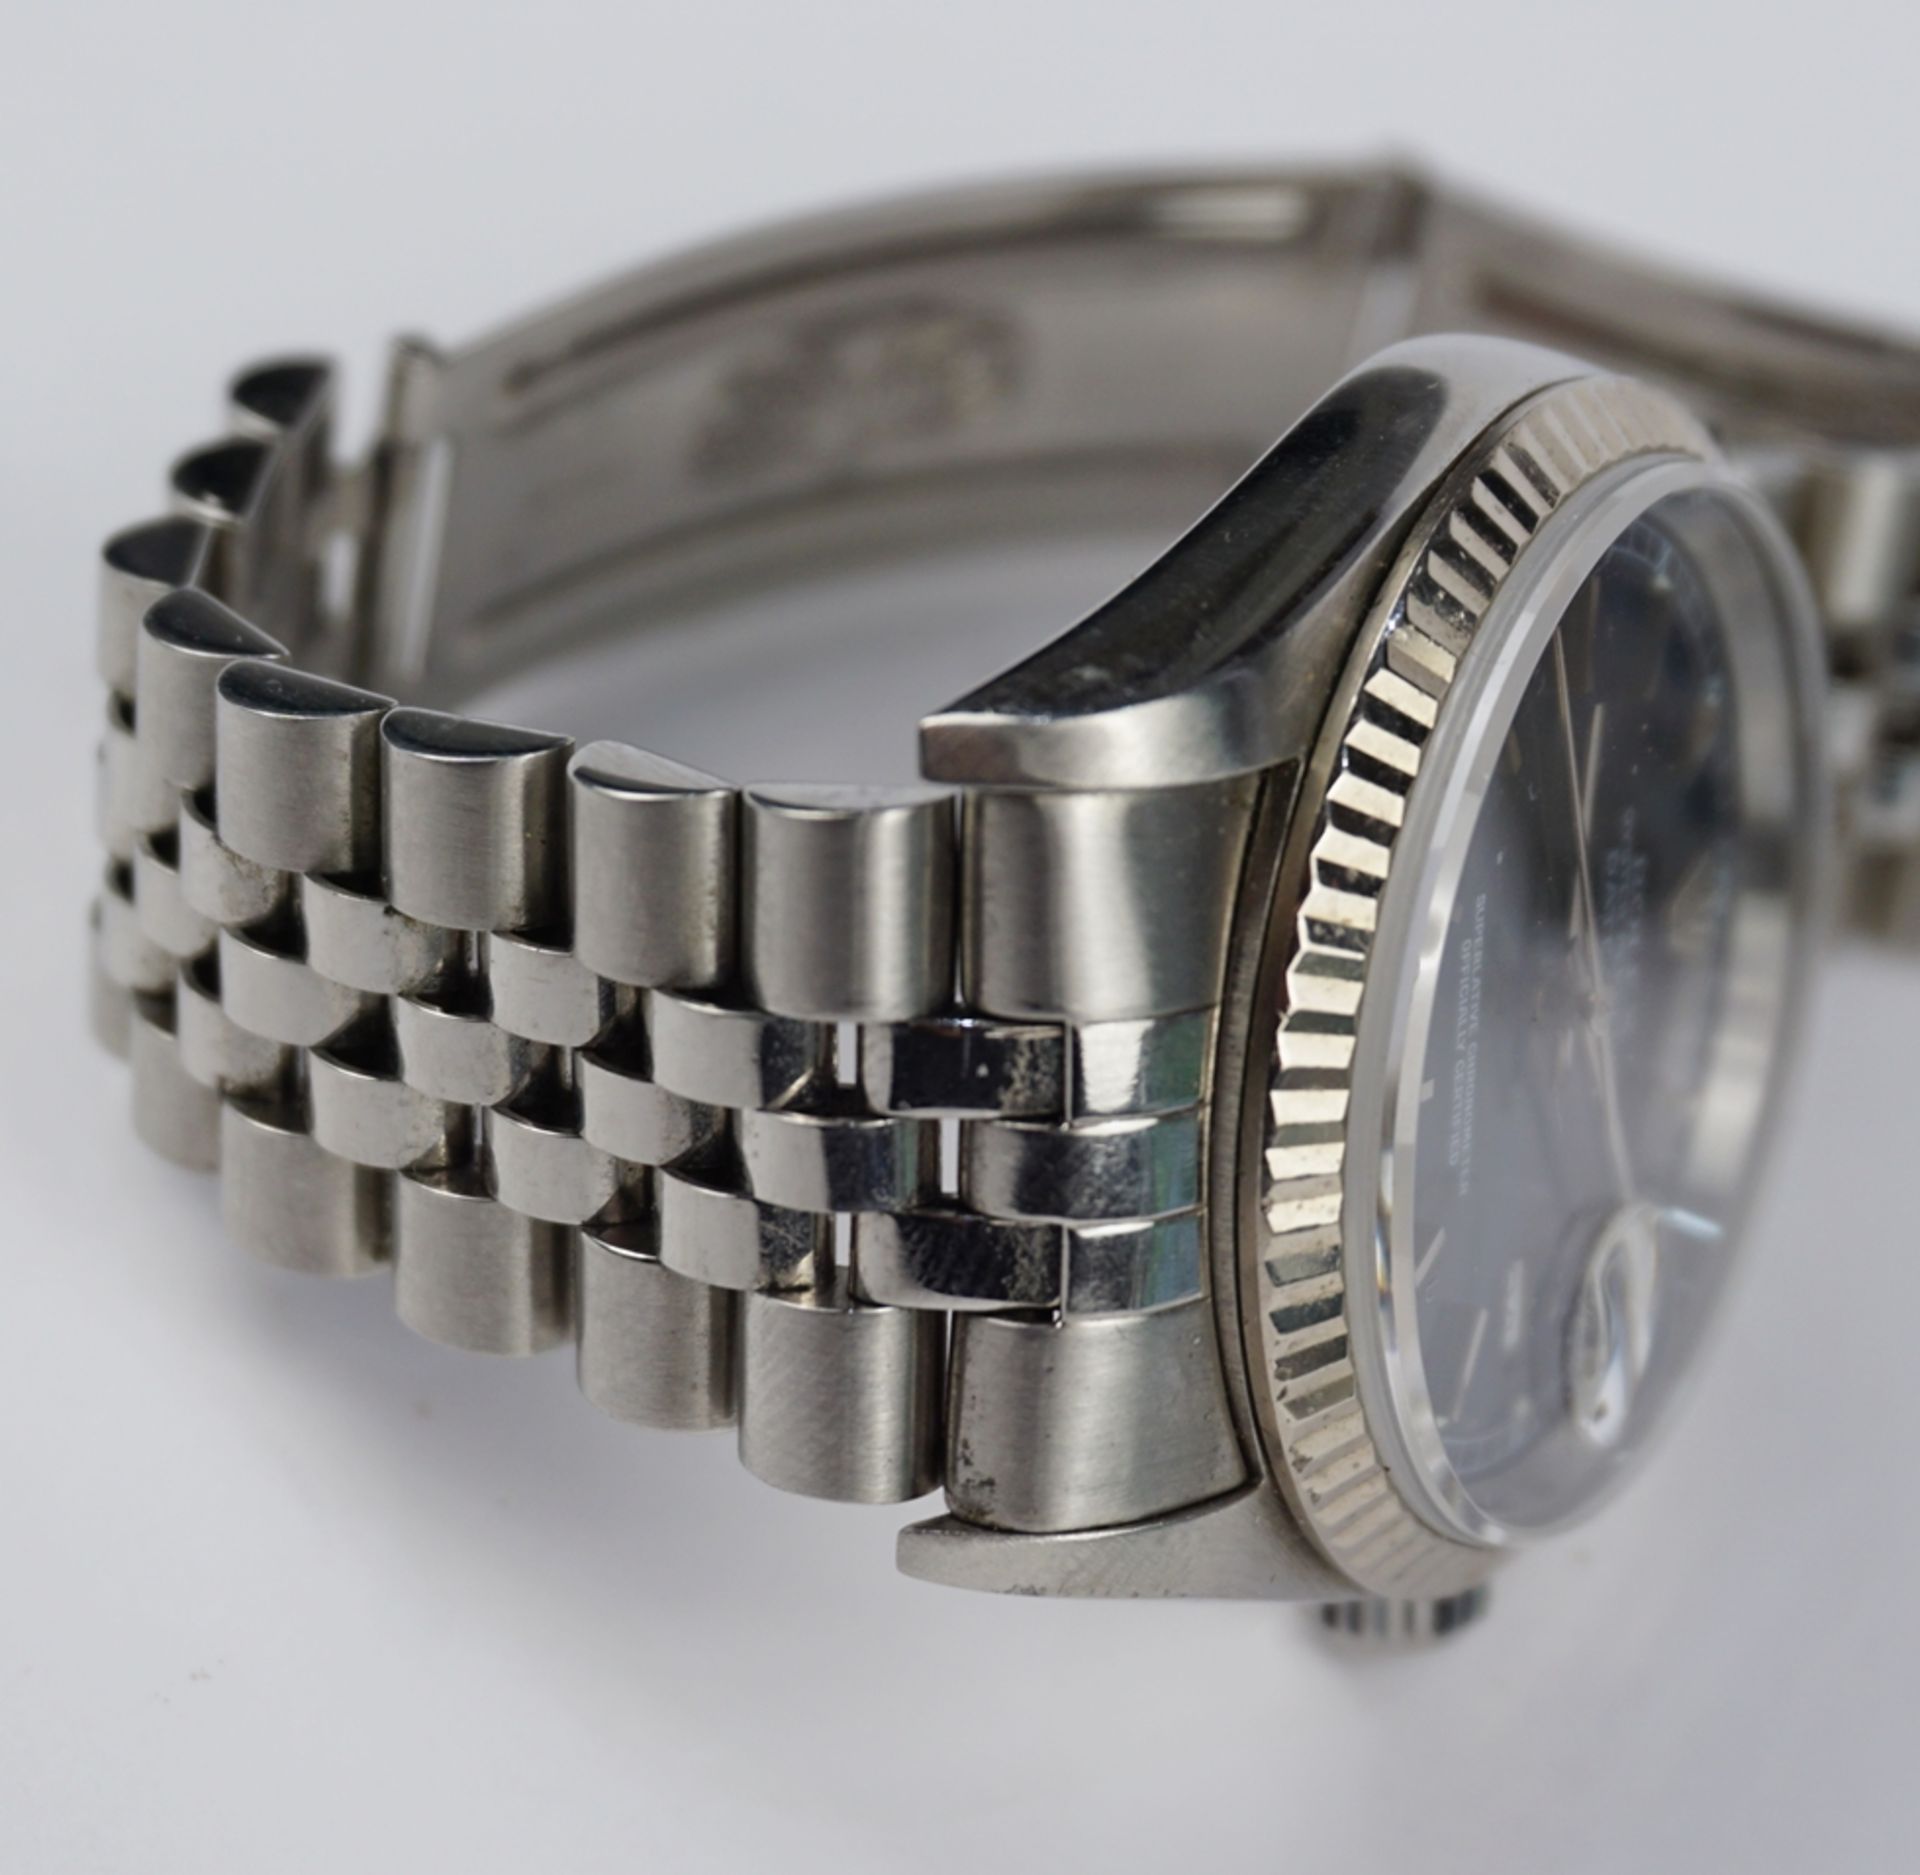 Armbanduhr Rolex Datejust 36, Edelstahl, um 1990 - Bild 6 aus 7